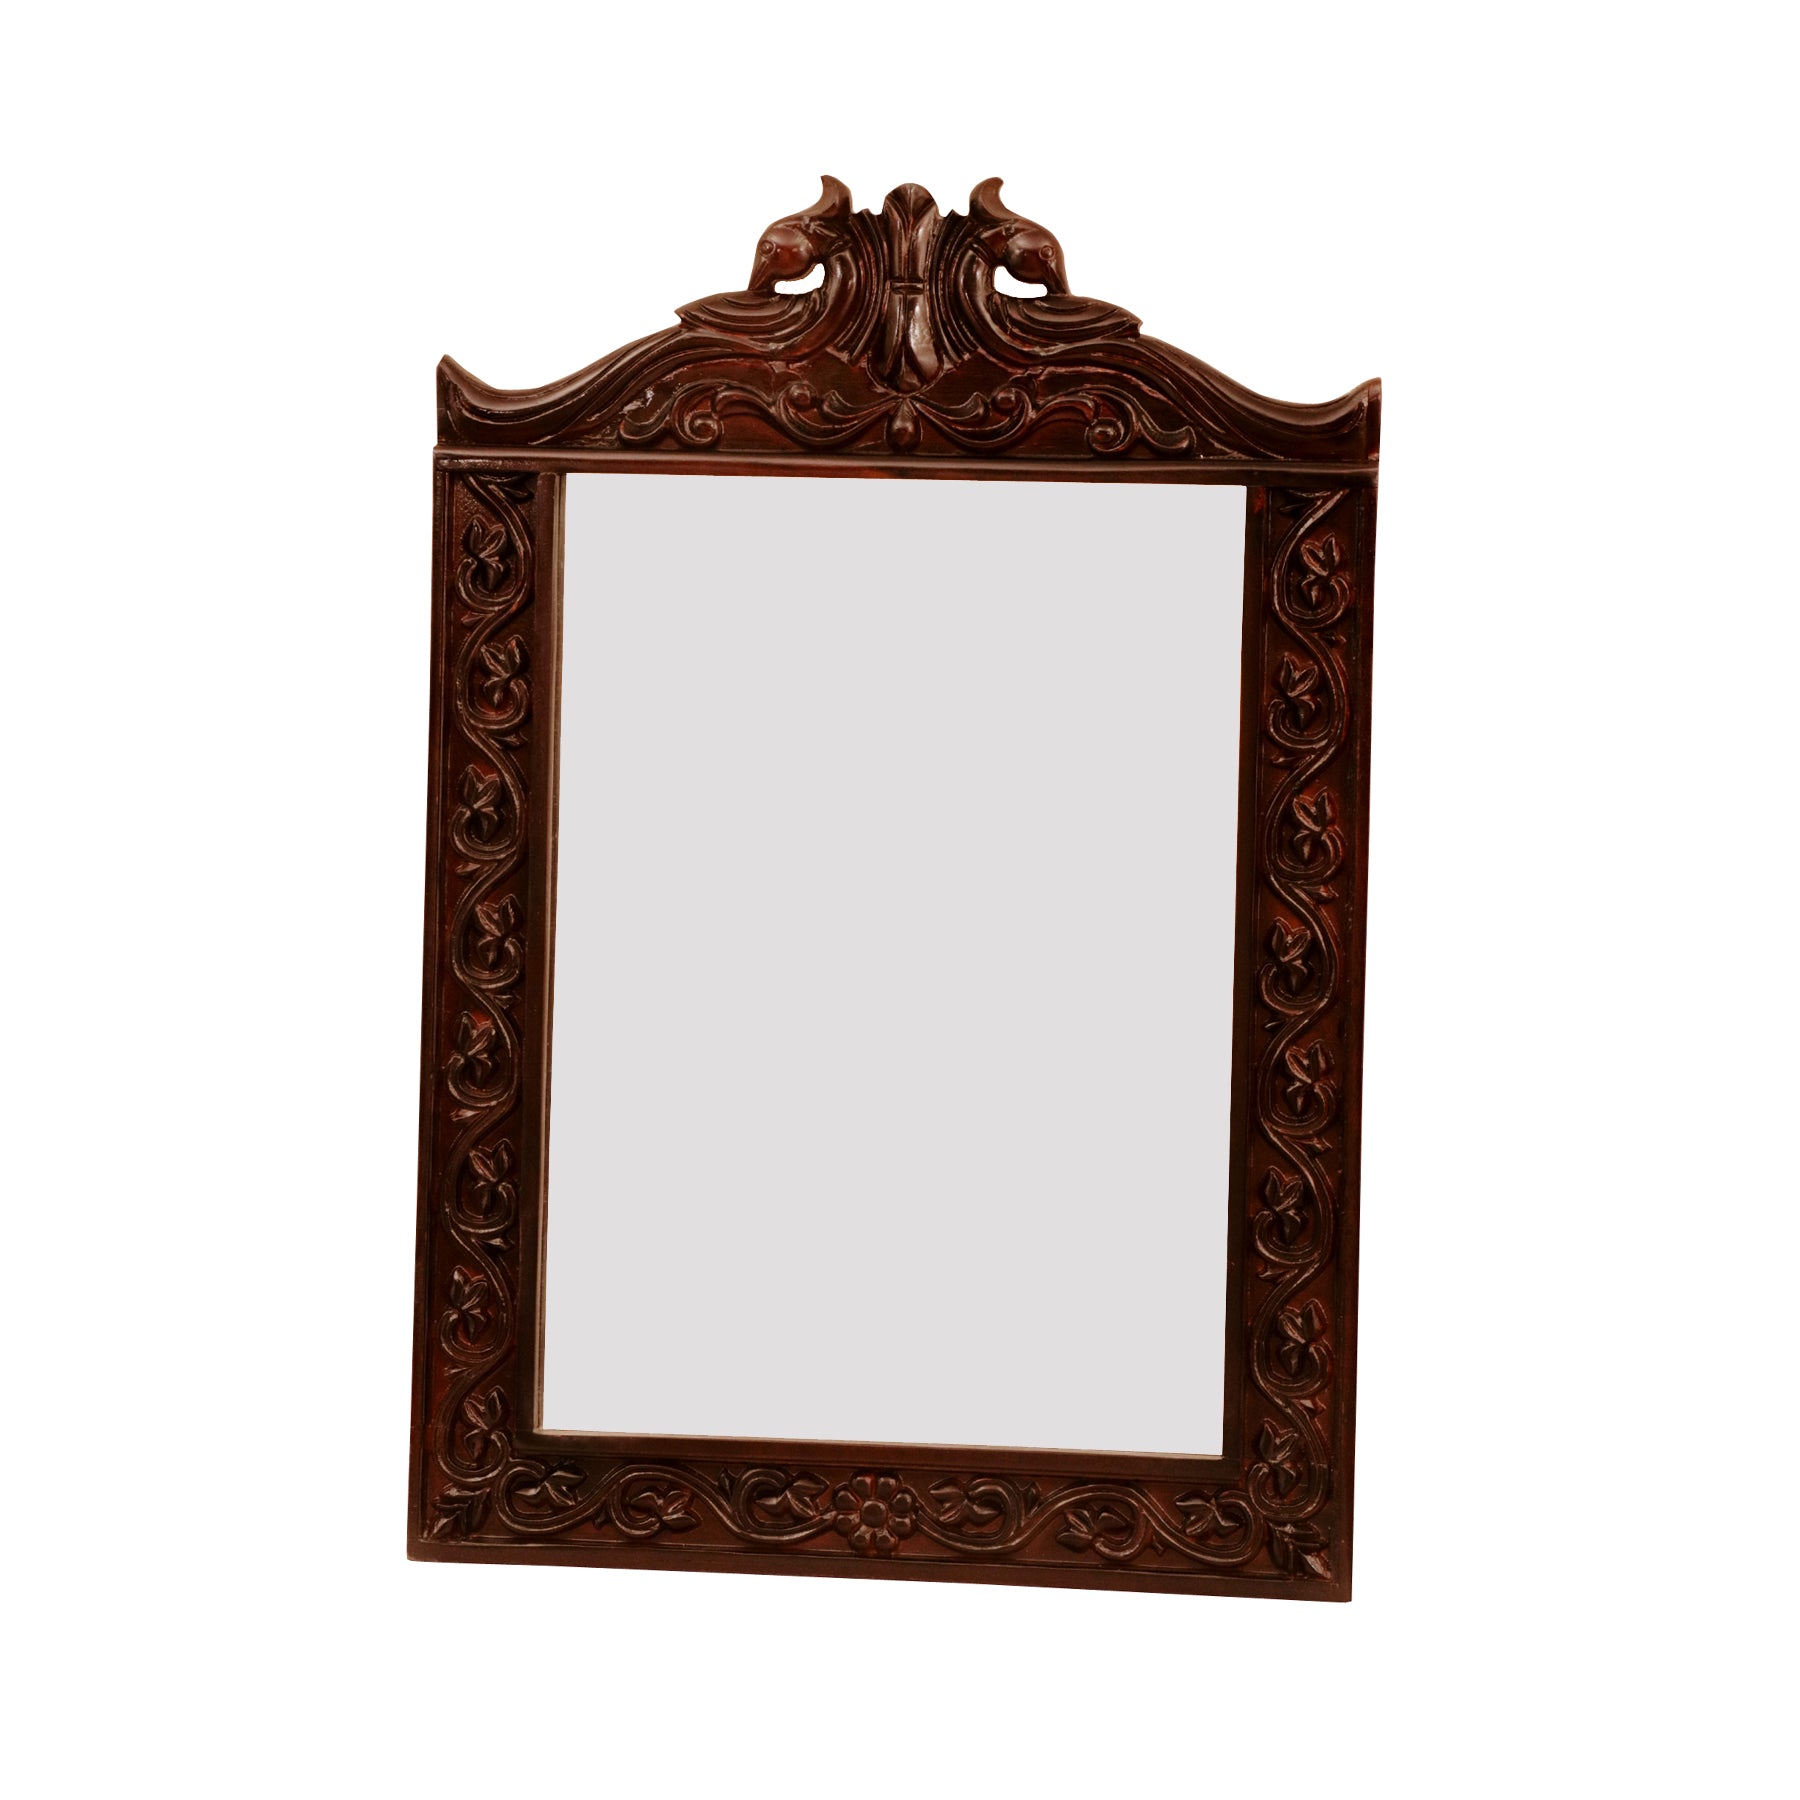 Intricate Wooden Mirror Frame Mirror